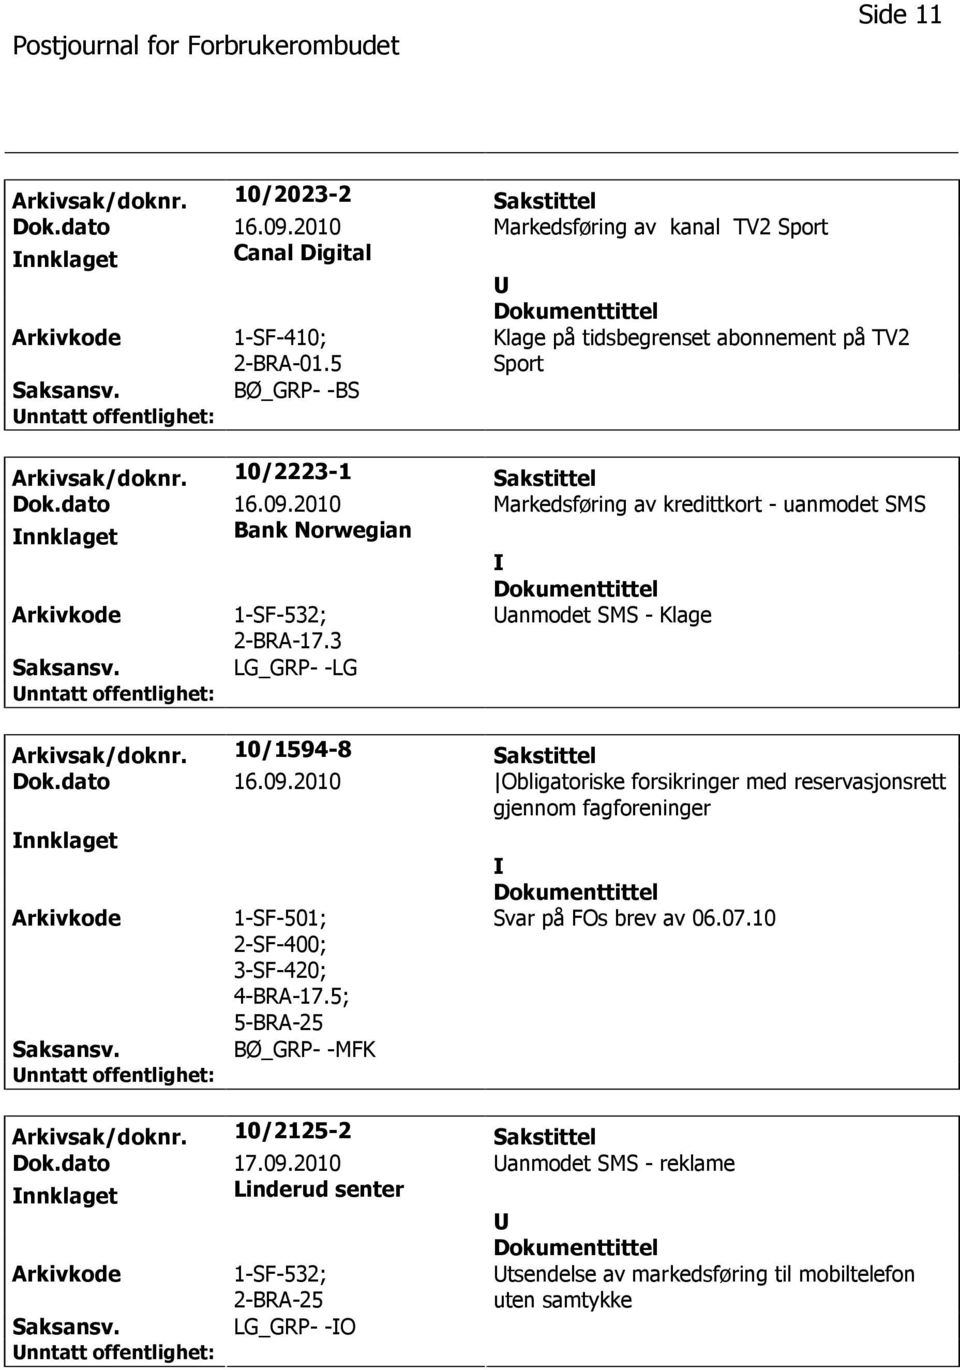 2010 Markedsføring av kredittkort - uanmodet SMS nnklaget Bank Norwegian 1-SF-532; 2-BRA-17.3 anmodet SMS - Klage LG_GRP- -LG Arkivsak/doknr. 10/1594-8 Sakstittel Dok.dato 16.09.